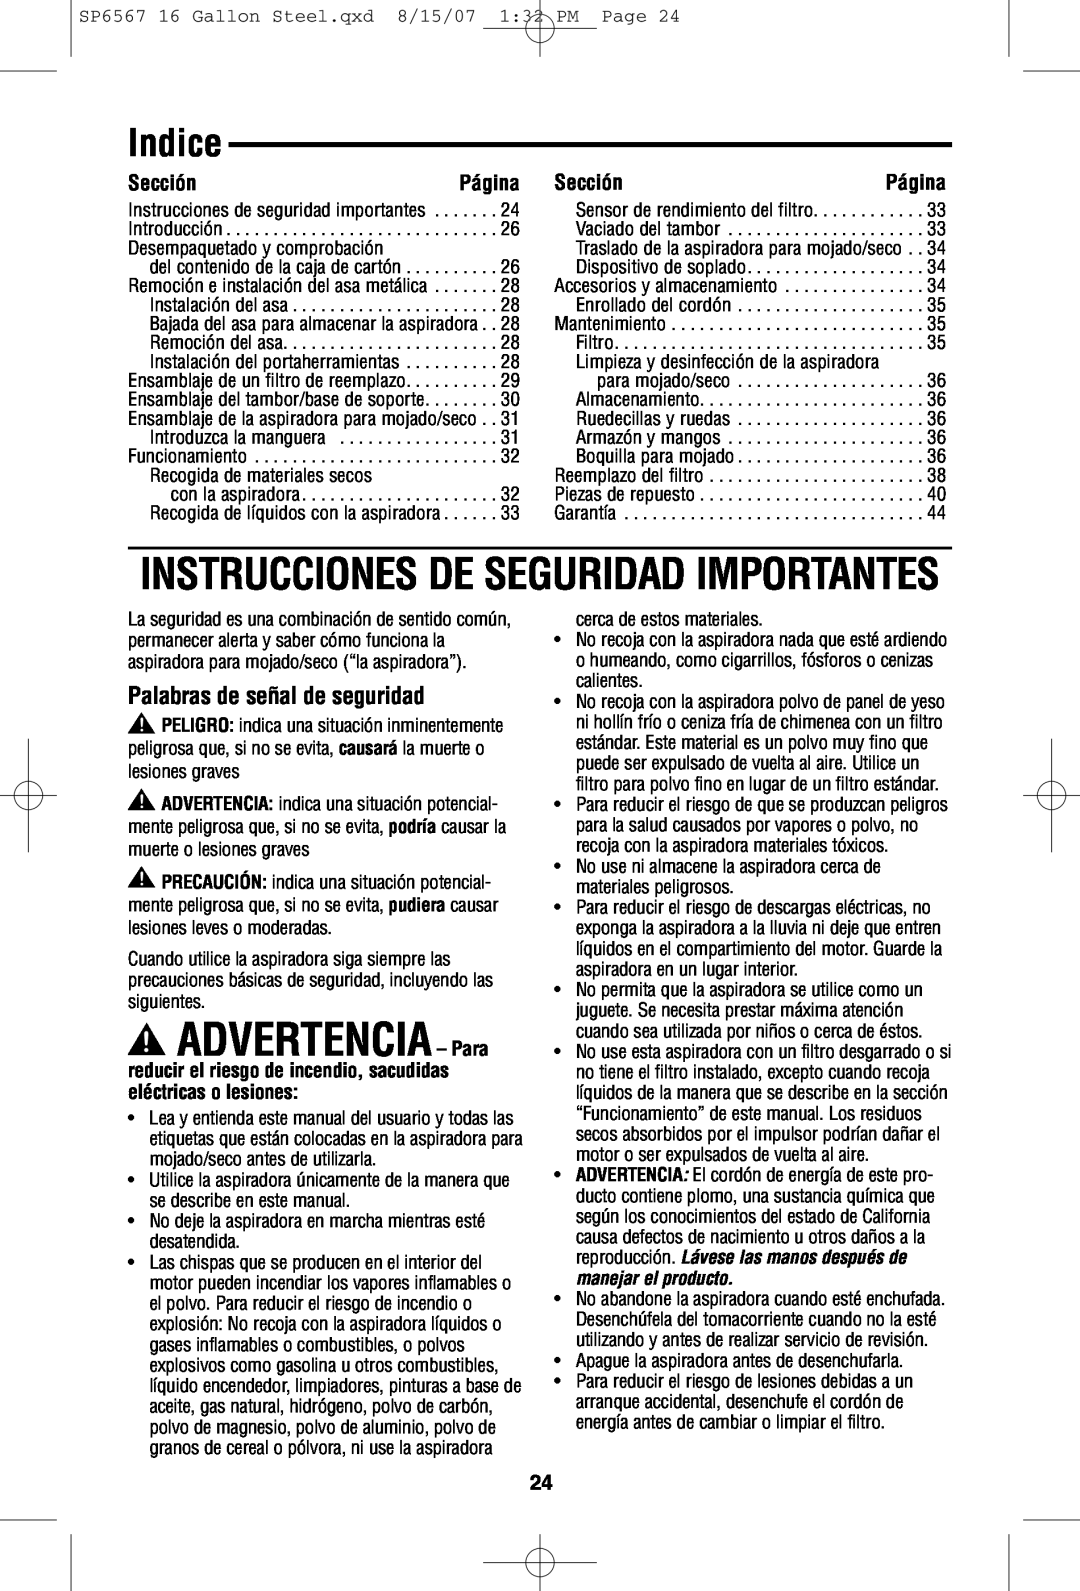 RIDGID WD1950 manual Indice, Instrucciones De Seguridad Importantes, ADVERTENCIA - Parasiguientes 